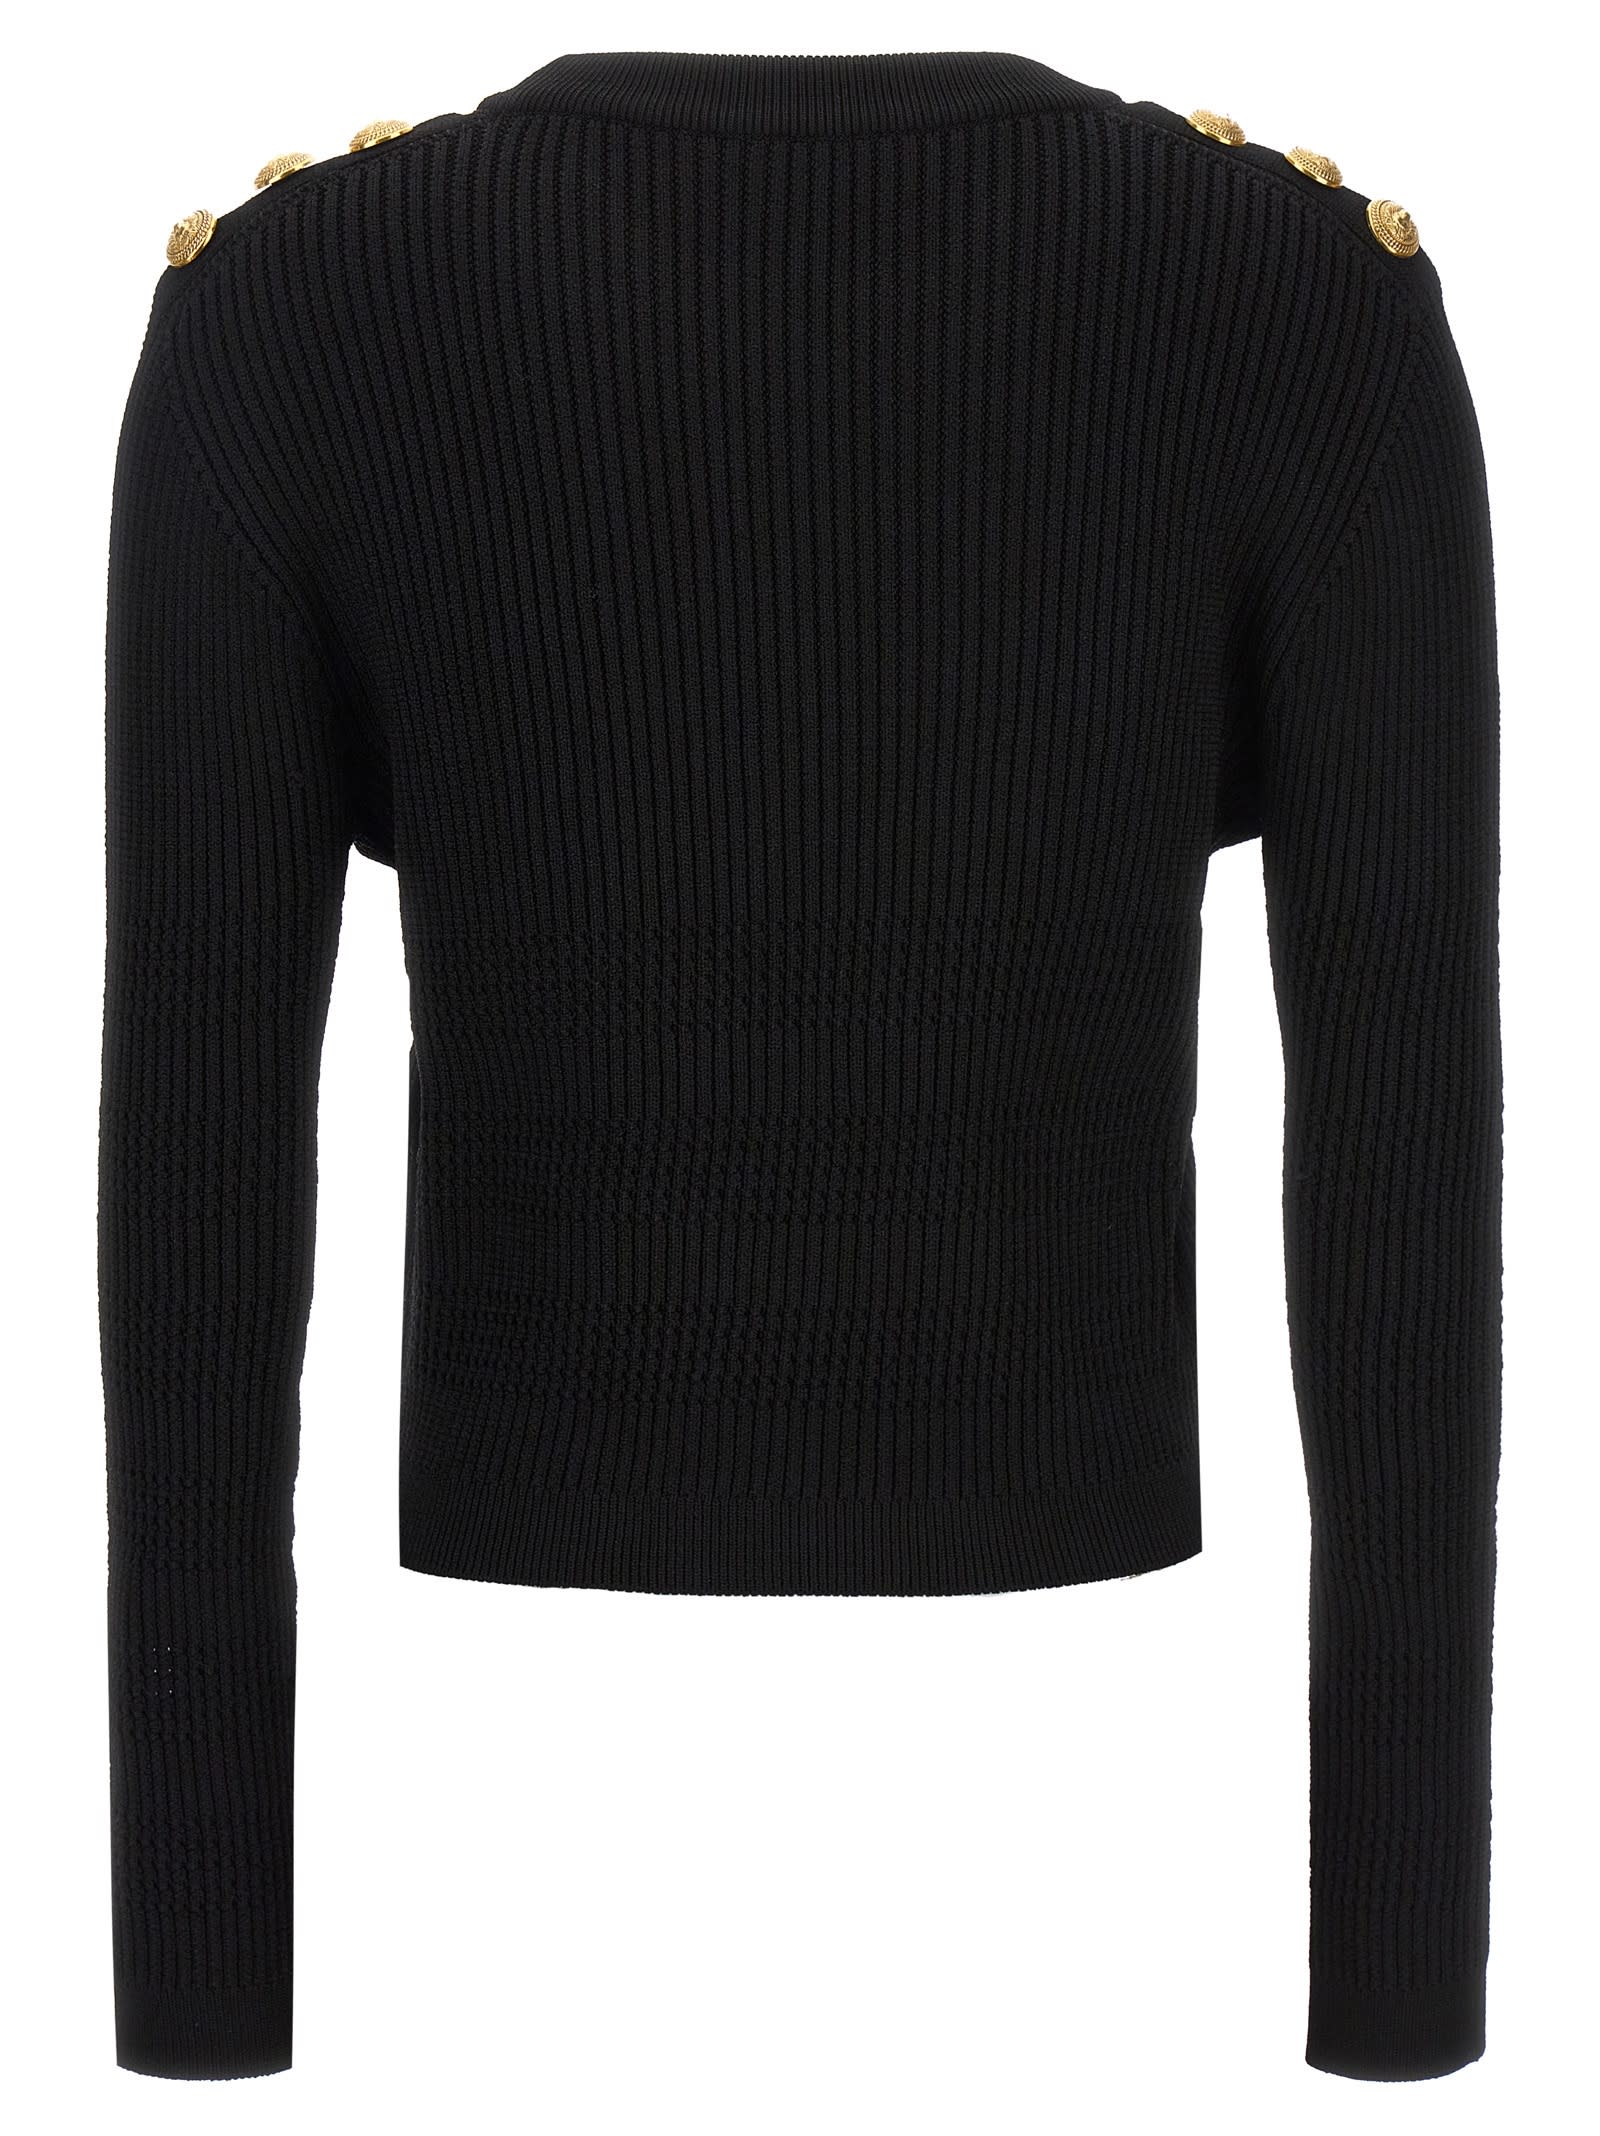 Shop Balmain Sweater